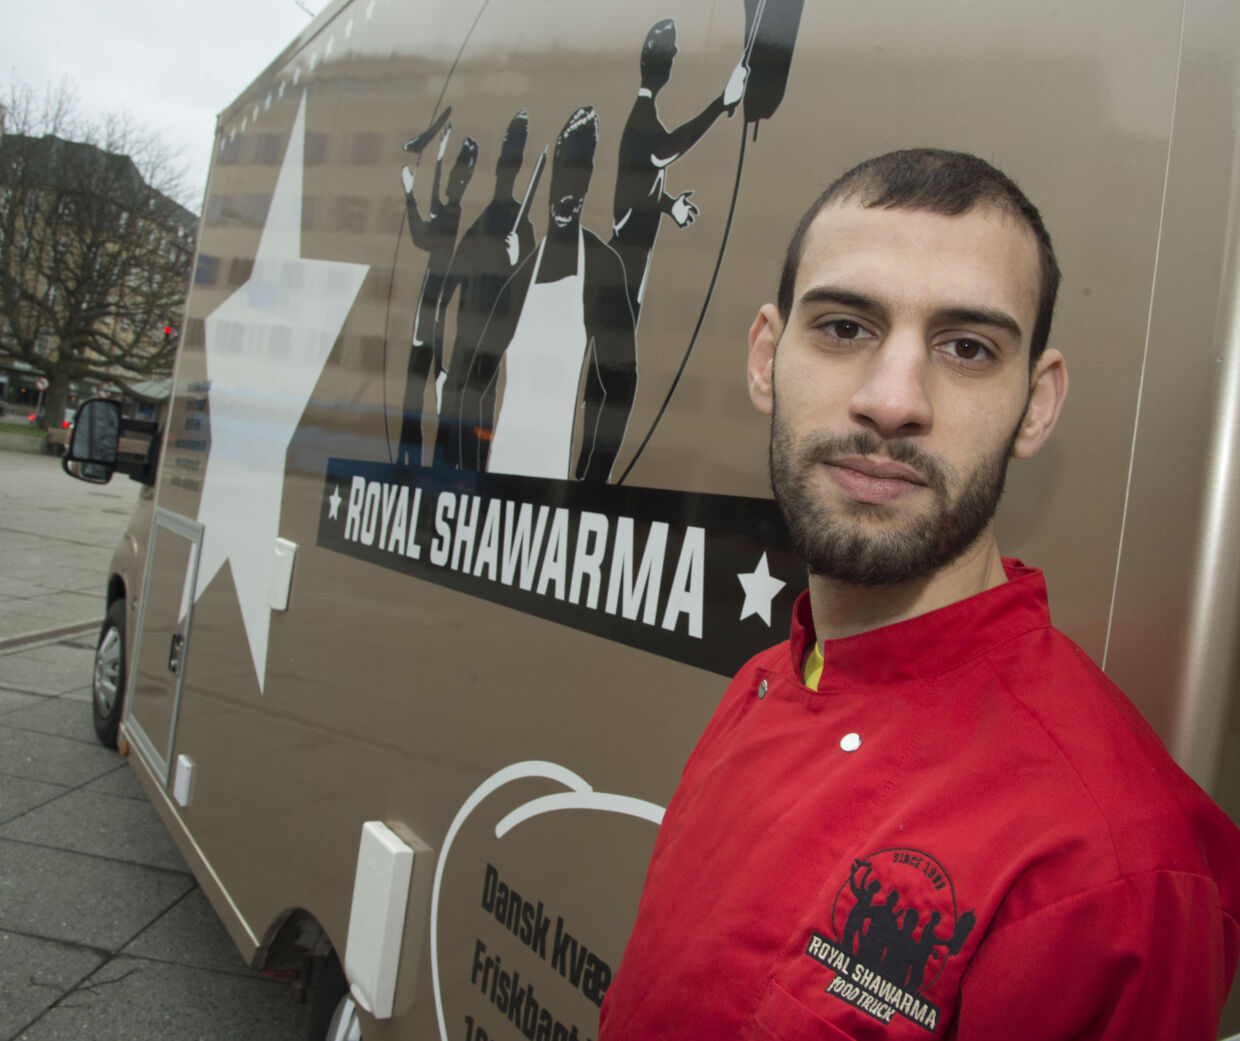 Mohammad Sabah Ahmad får nu mere tid til at passe sin shawarmabix. Han  nåede at være folketingskandidat for Alternativet i Østjylland i tre dage, inden opstillingsvalget blev annulleret. I 2014 skrev han i et blogindlæg, at han kendte til en person i Grimhøjmoskeen, der forsøgte at rekruttere unge til Syrien. Foto: Kim Haugaard/Scanpix.